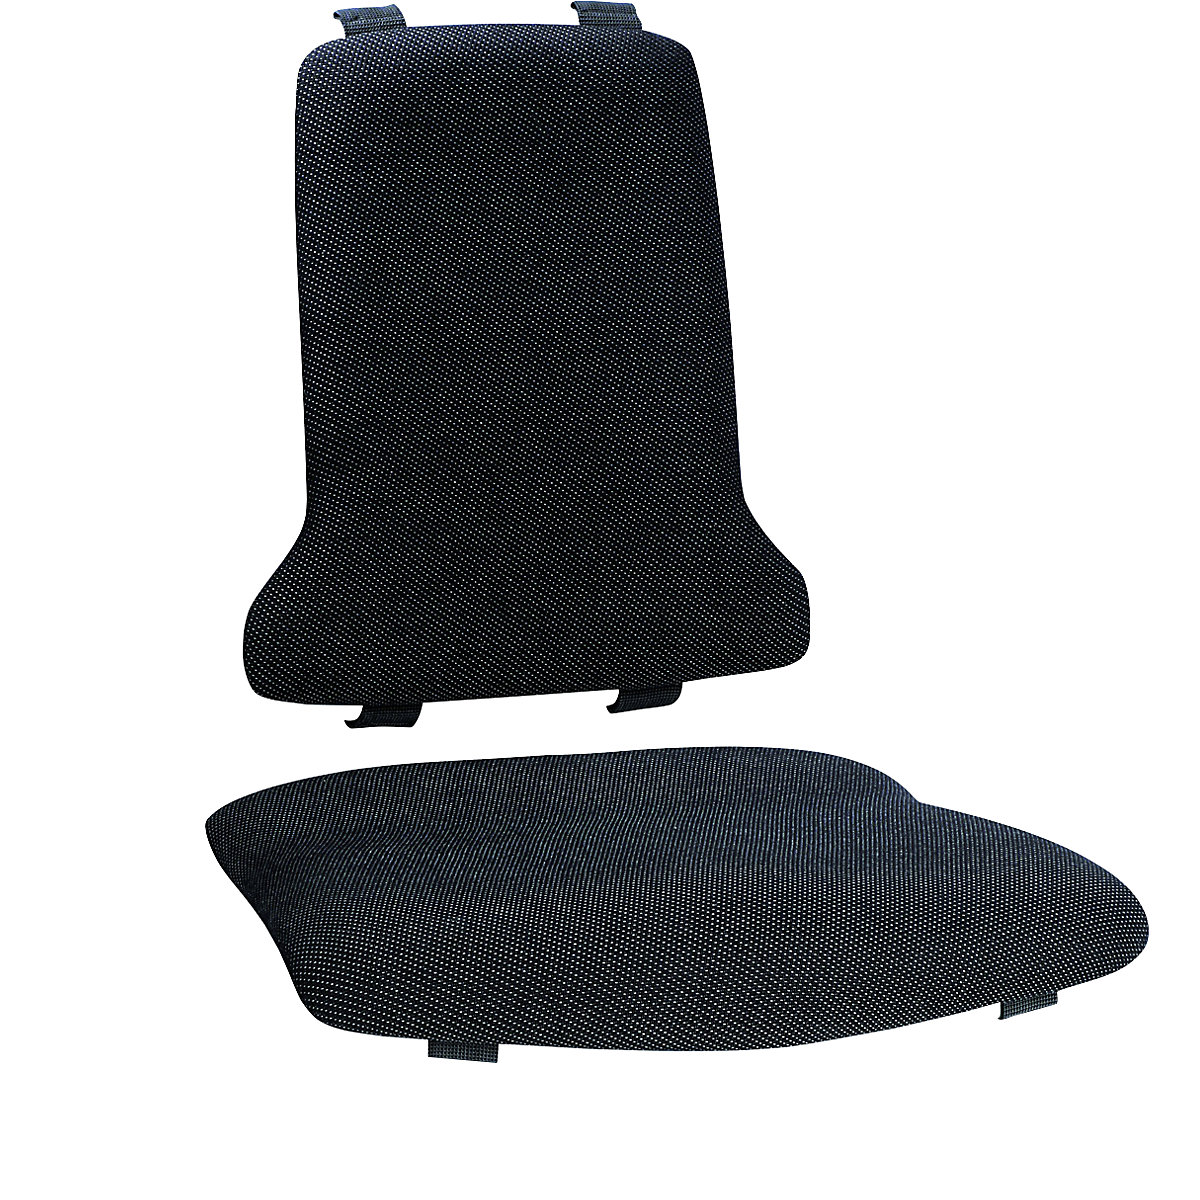 Čalounění – bimos, standardní provedení, vždy 1 čalounění pro sedák a 1 pro opěradlo, textilní čalounění, černá-1